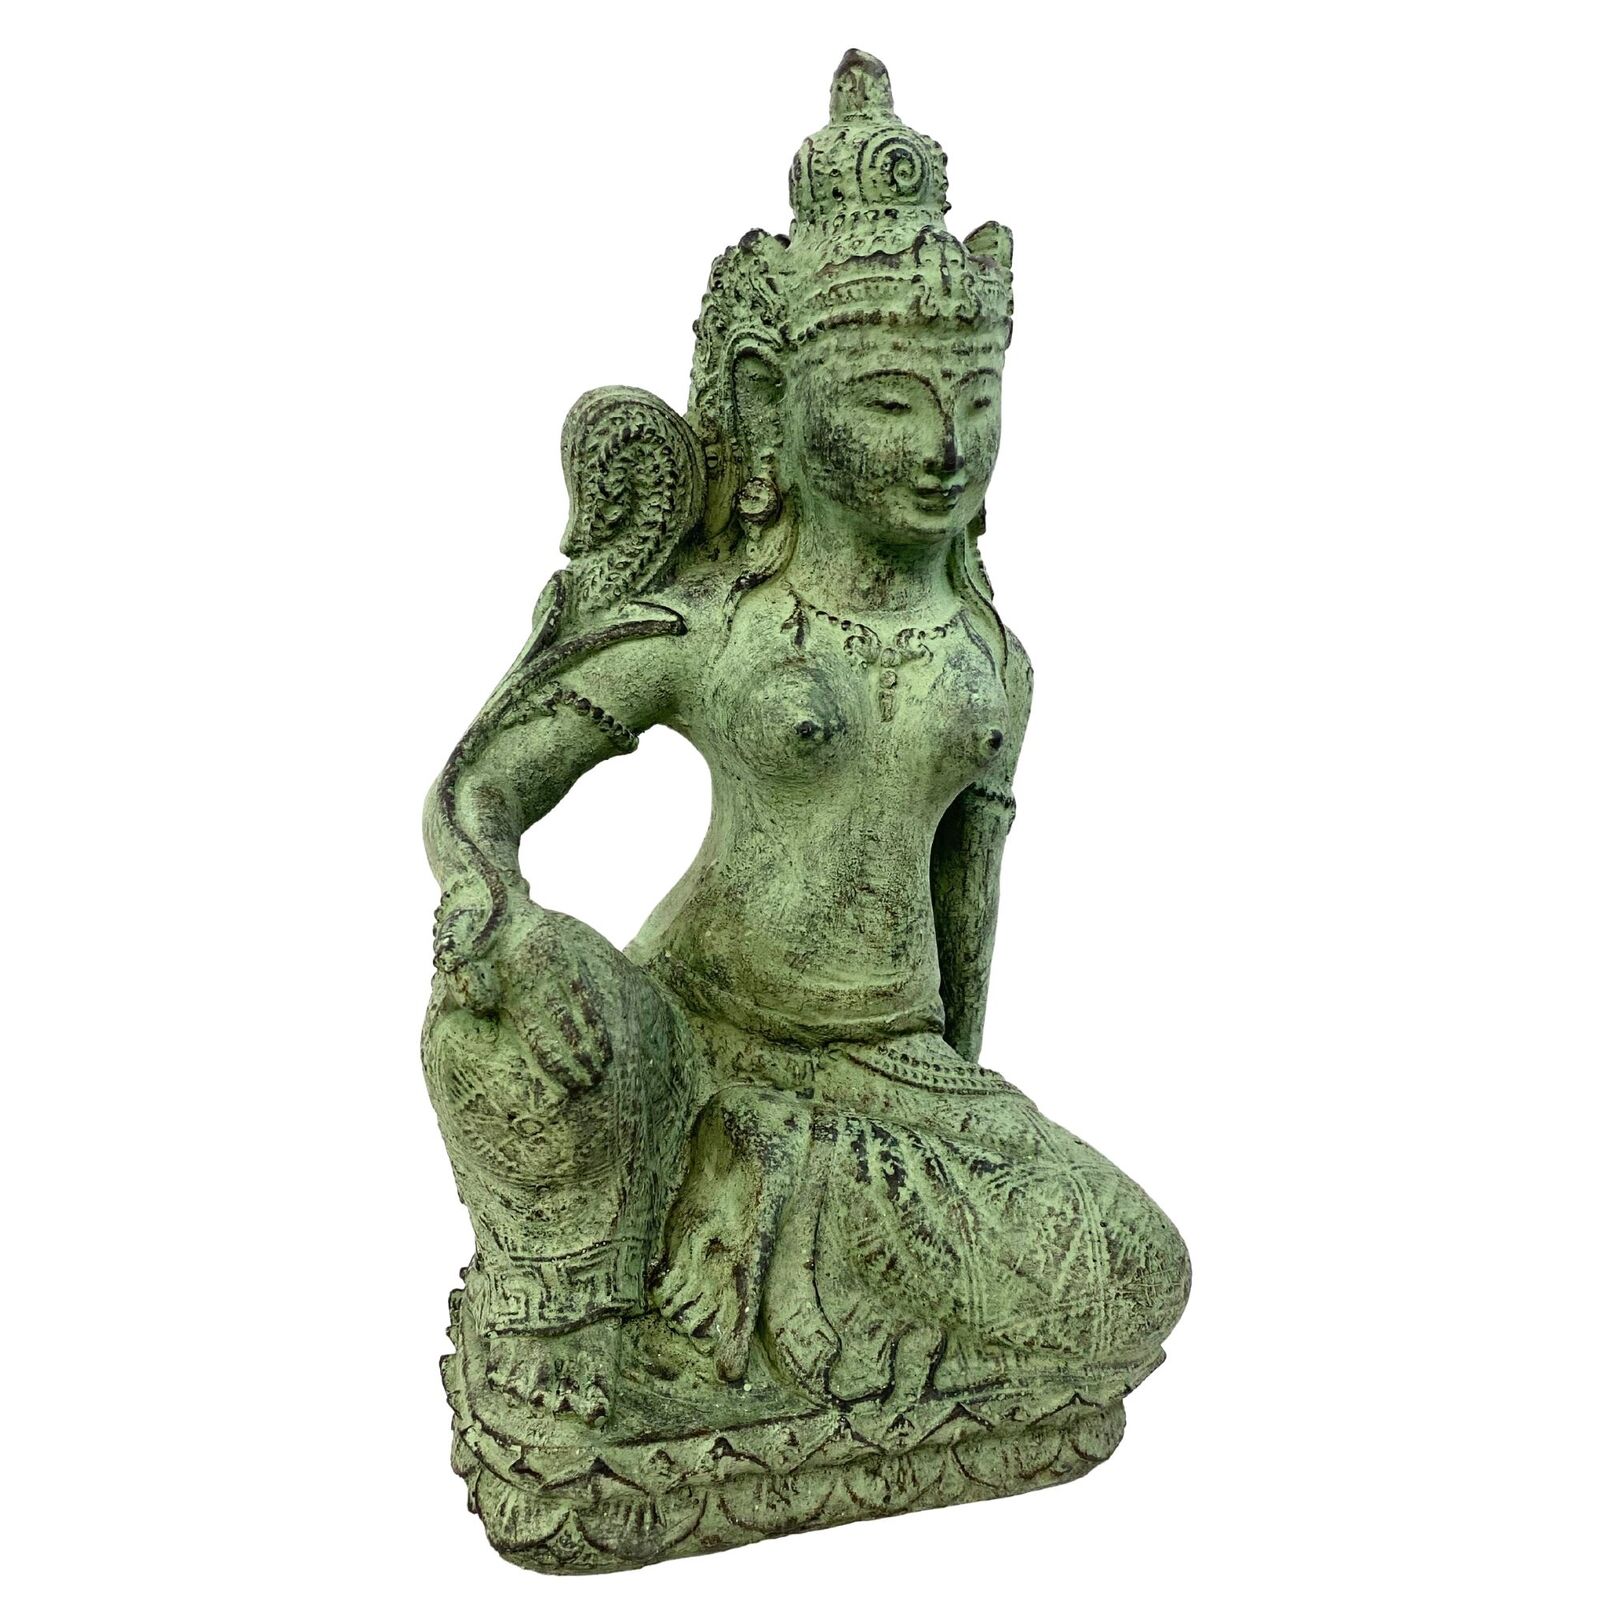 Balinese Dewi Sri Rice Mother Goddess Fertility Garden statue Sculpture Cast Res